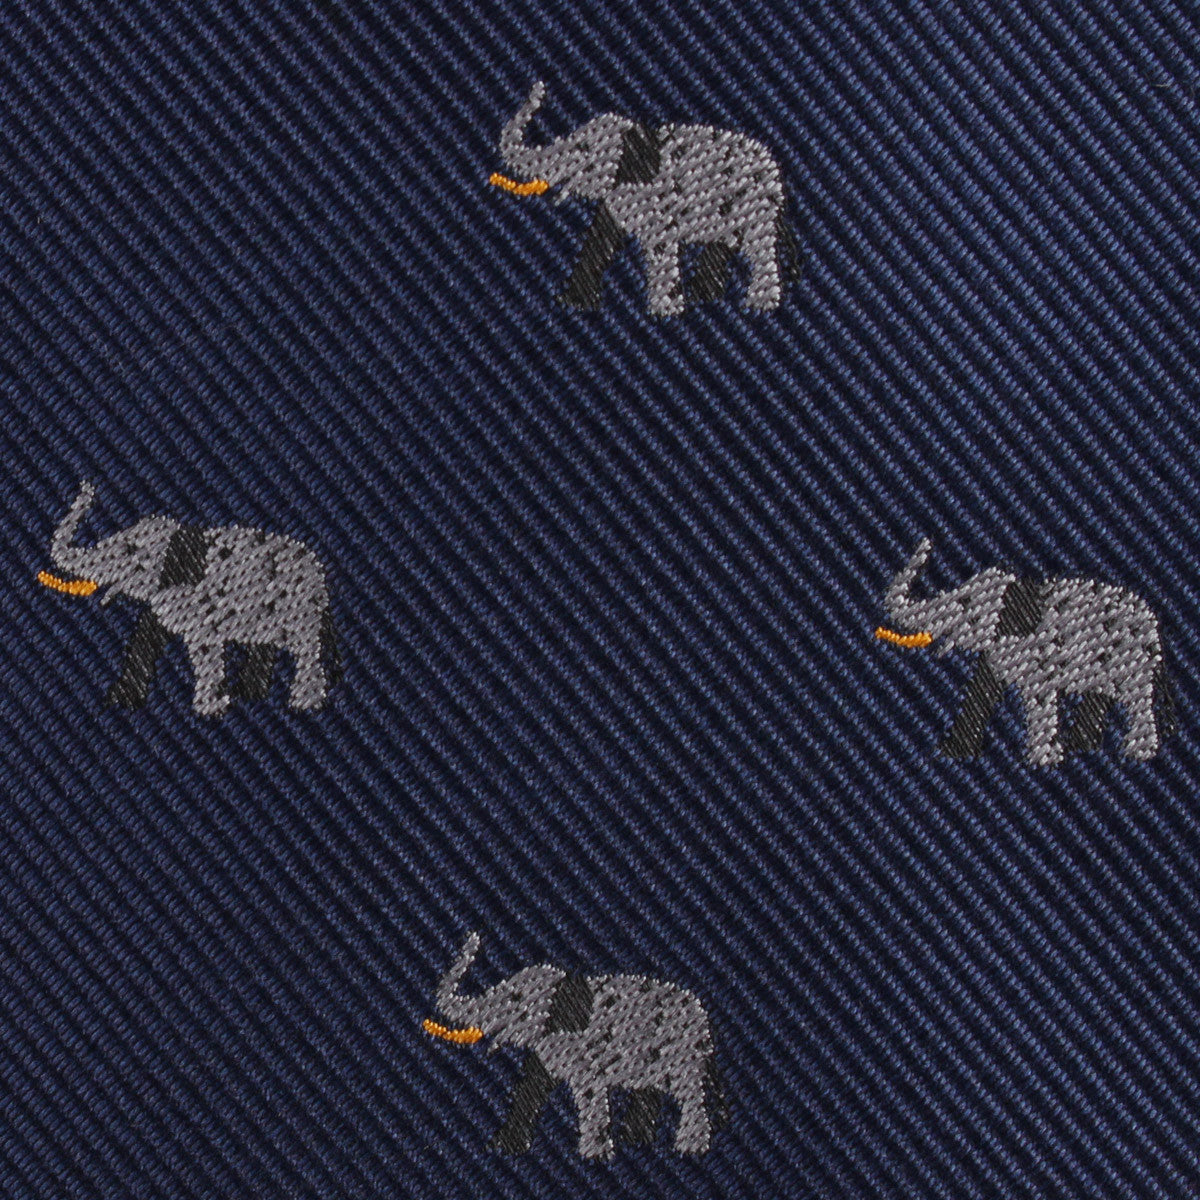 Indian Elephant Fabric Pocket Square